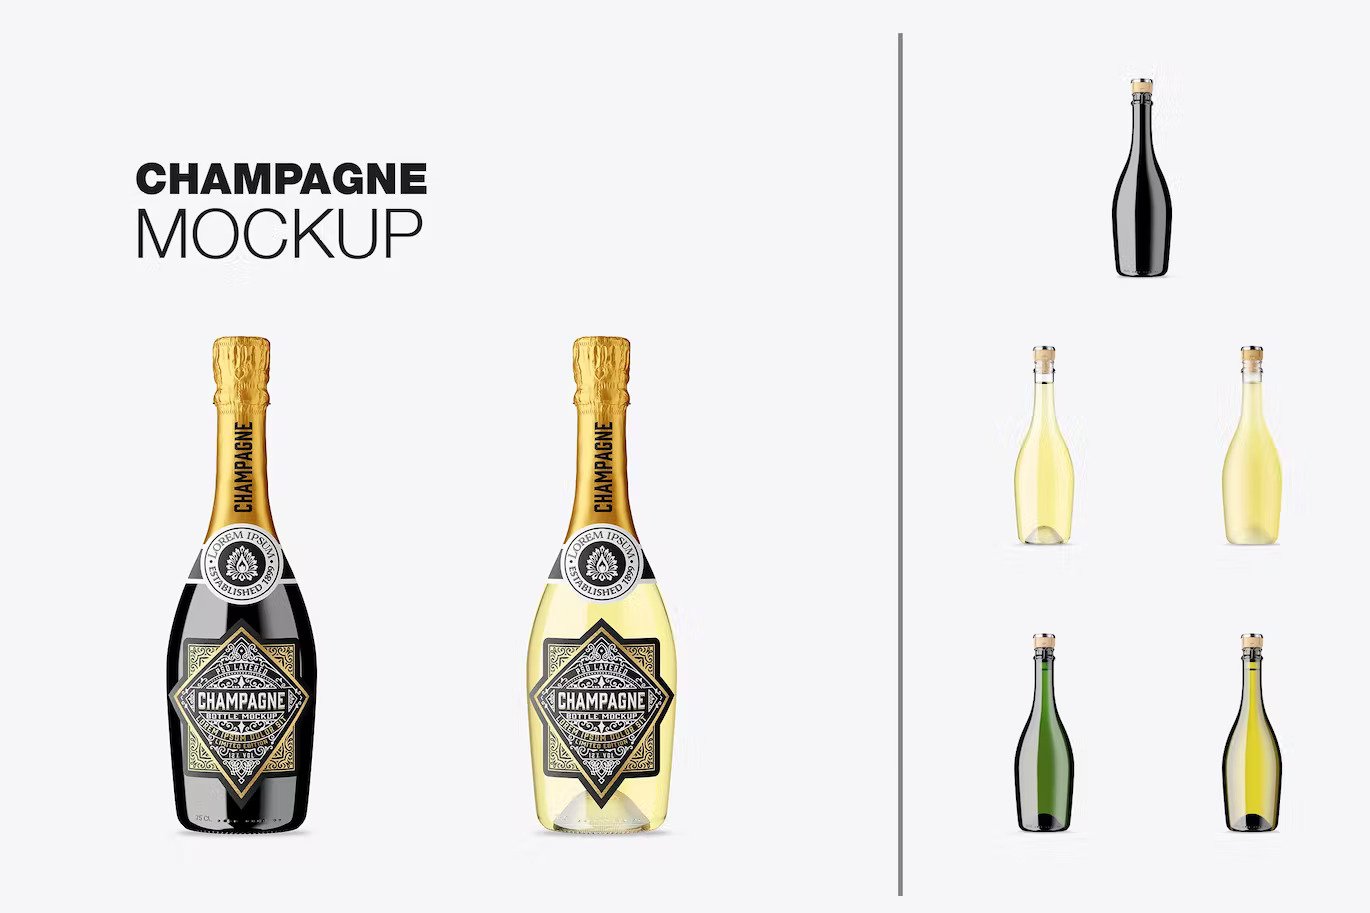 A set of champagne bottle mockups